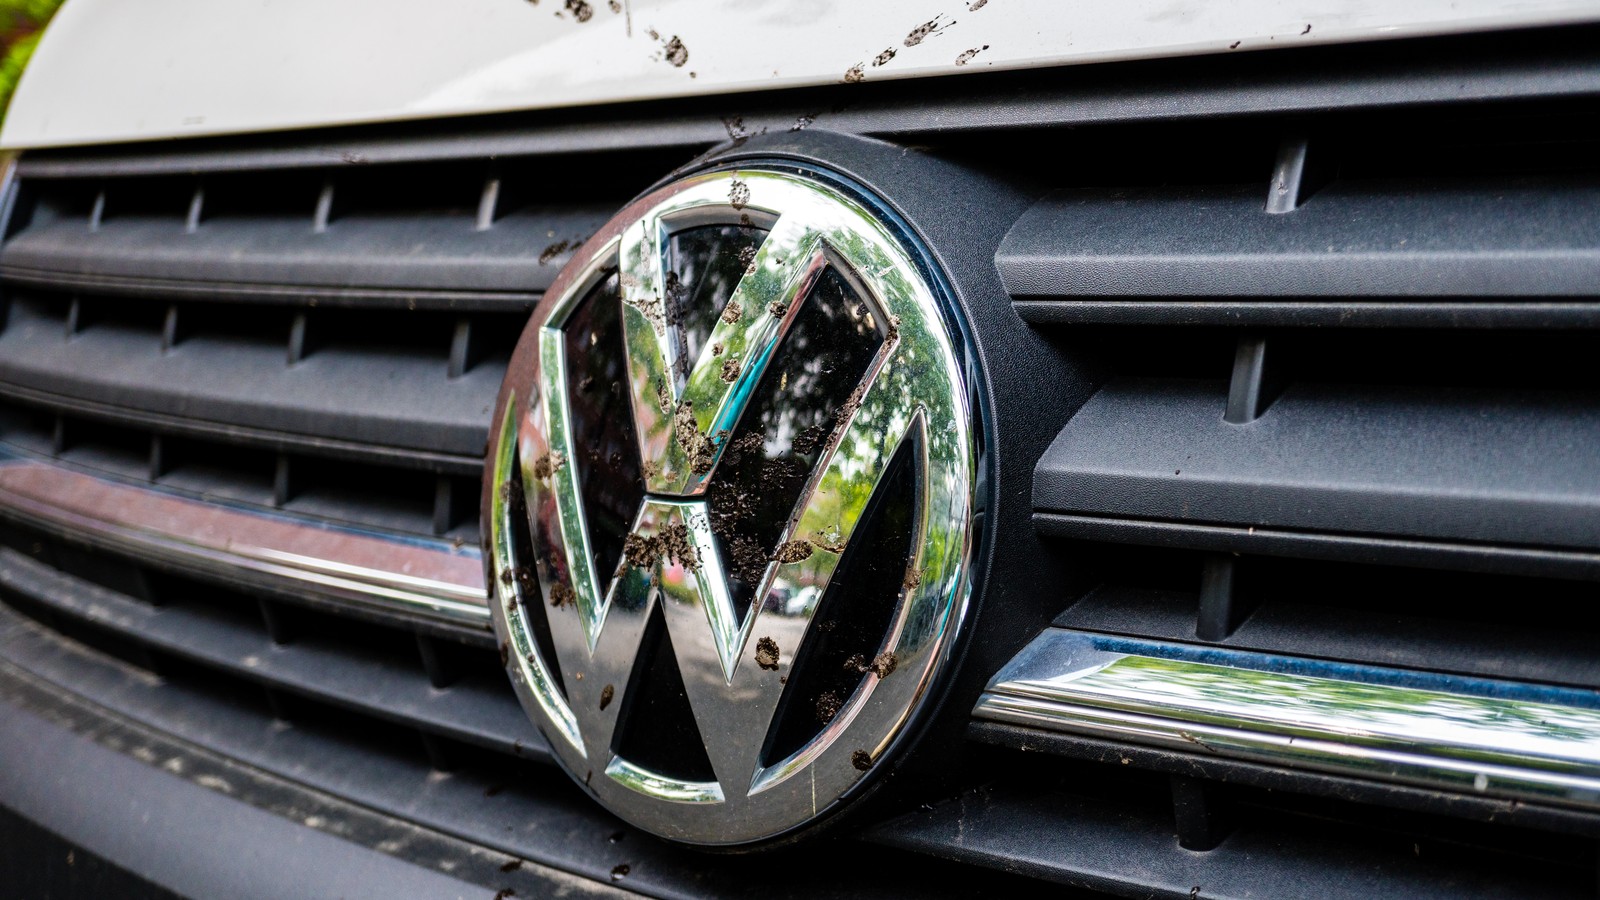 Bestimmte VW-Dieselmotoren (Typ EA189) stoßen werkseitig aufgrund einer Manipulationssoftware mehr Stickoxide aus als erlaubt. Handwerksmeister Harald Götze fordert daher die Rückabwicklung seines Kaufvertrags. 